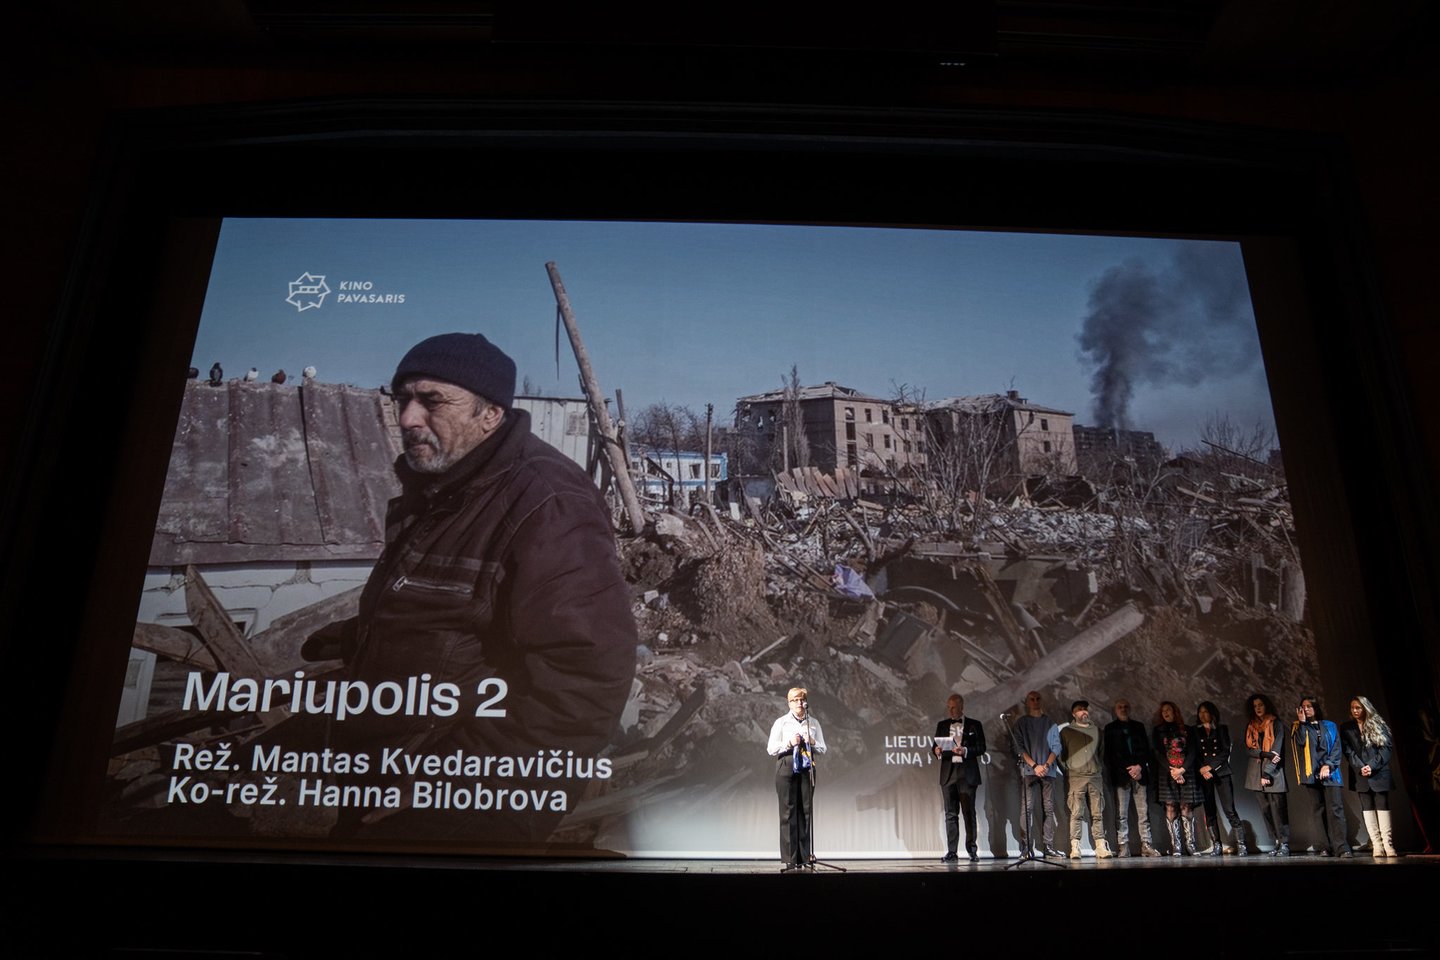  Kino teatruose – Ukrainoje nužudyto režisieriaus Manto Kvedaravičiaus dokumentinis filmas „Mariupolis 2“.<br> Pr. siuntėjų nuotr.